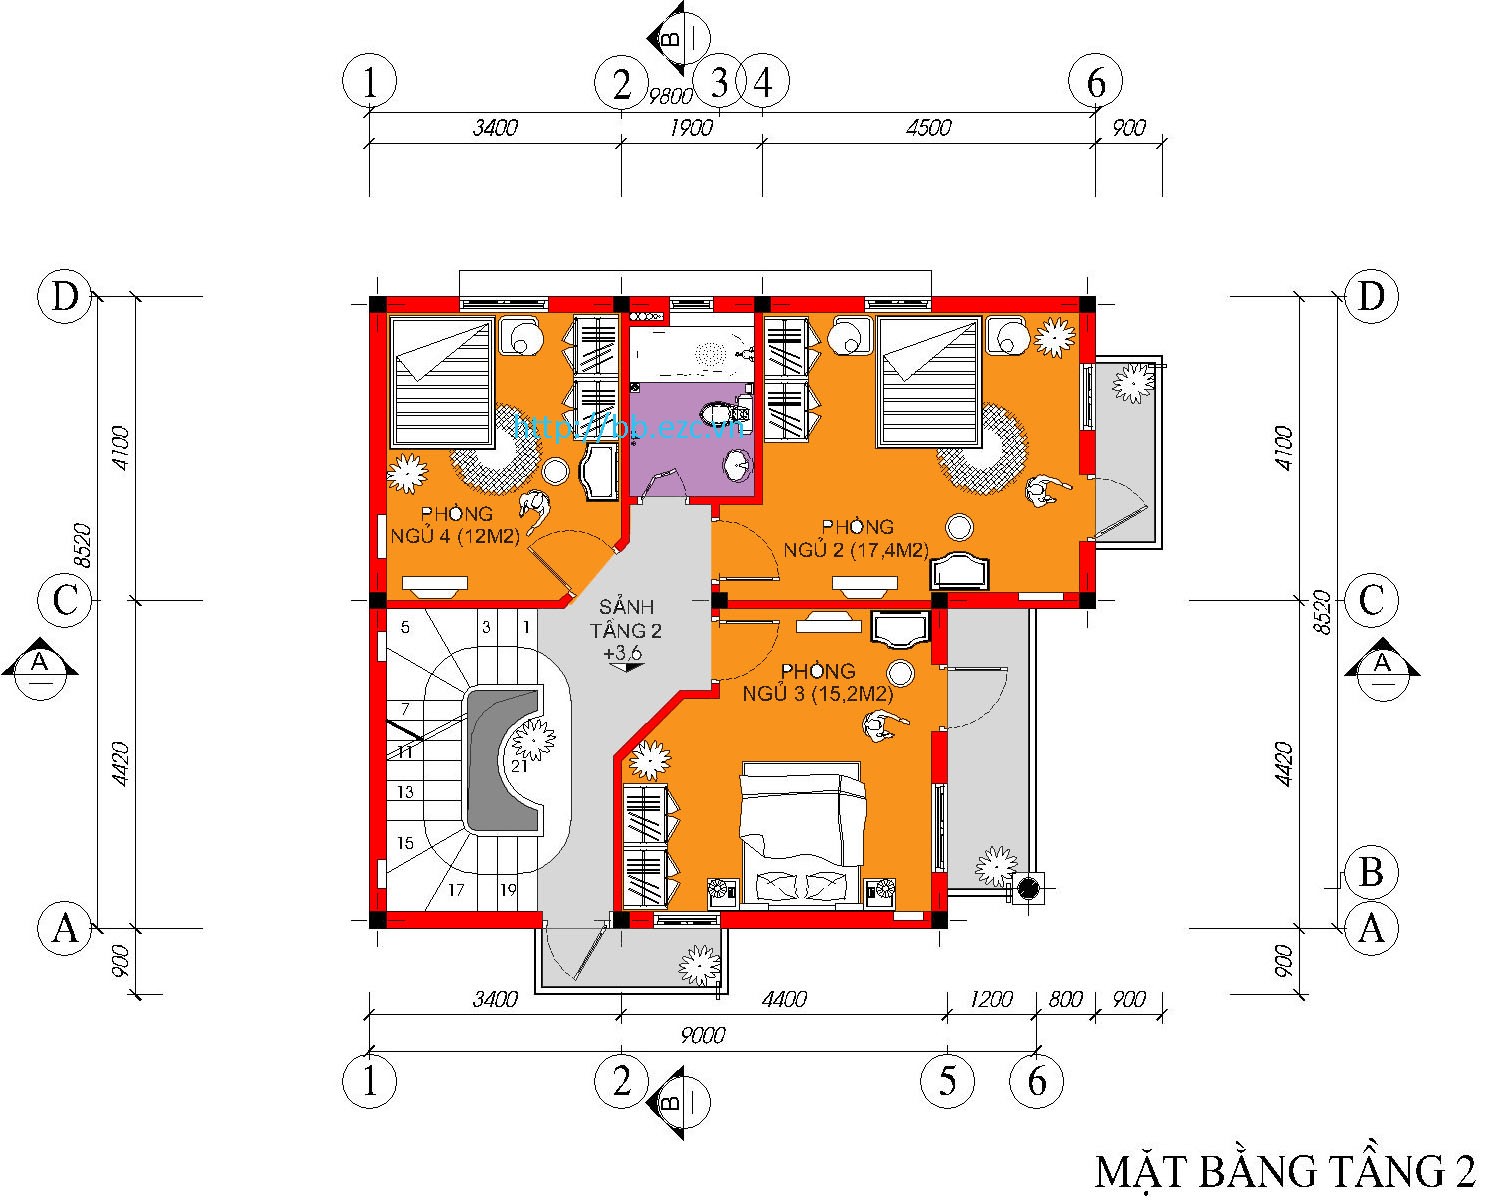 Biệt thự / nhà vườn 8.5x9m - 3 tầng - 4 phòng ngủ - Mặt bằng tầng 2